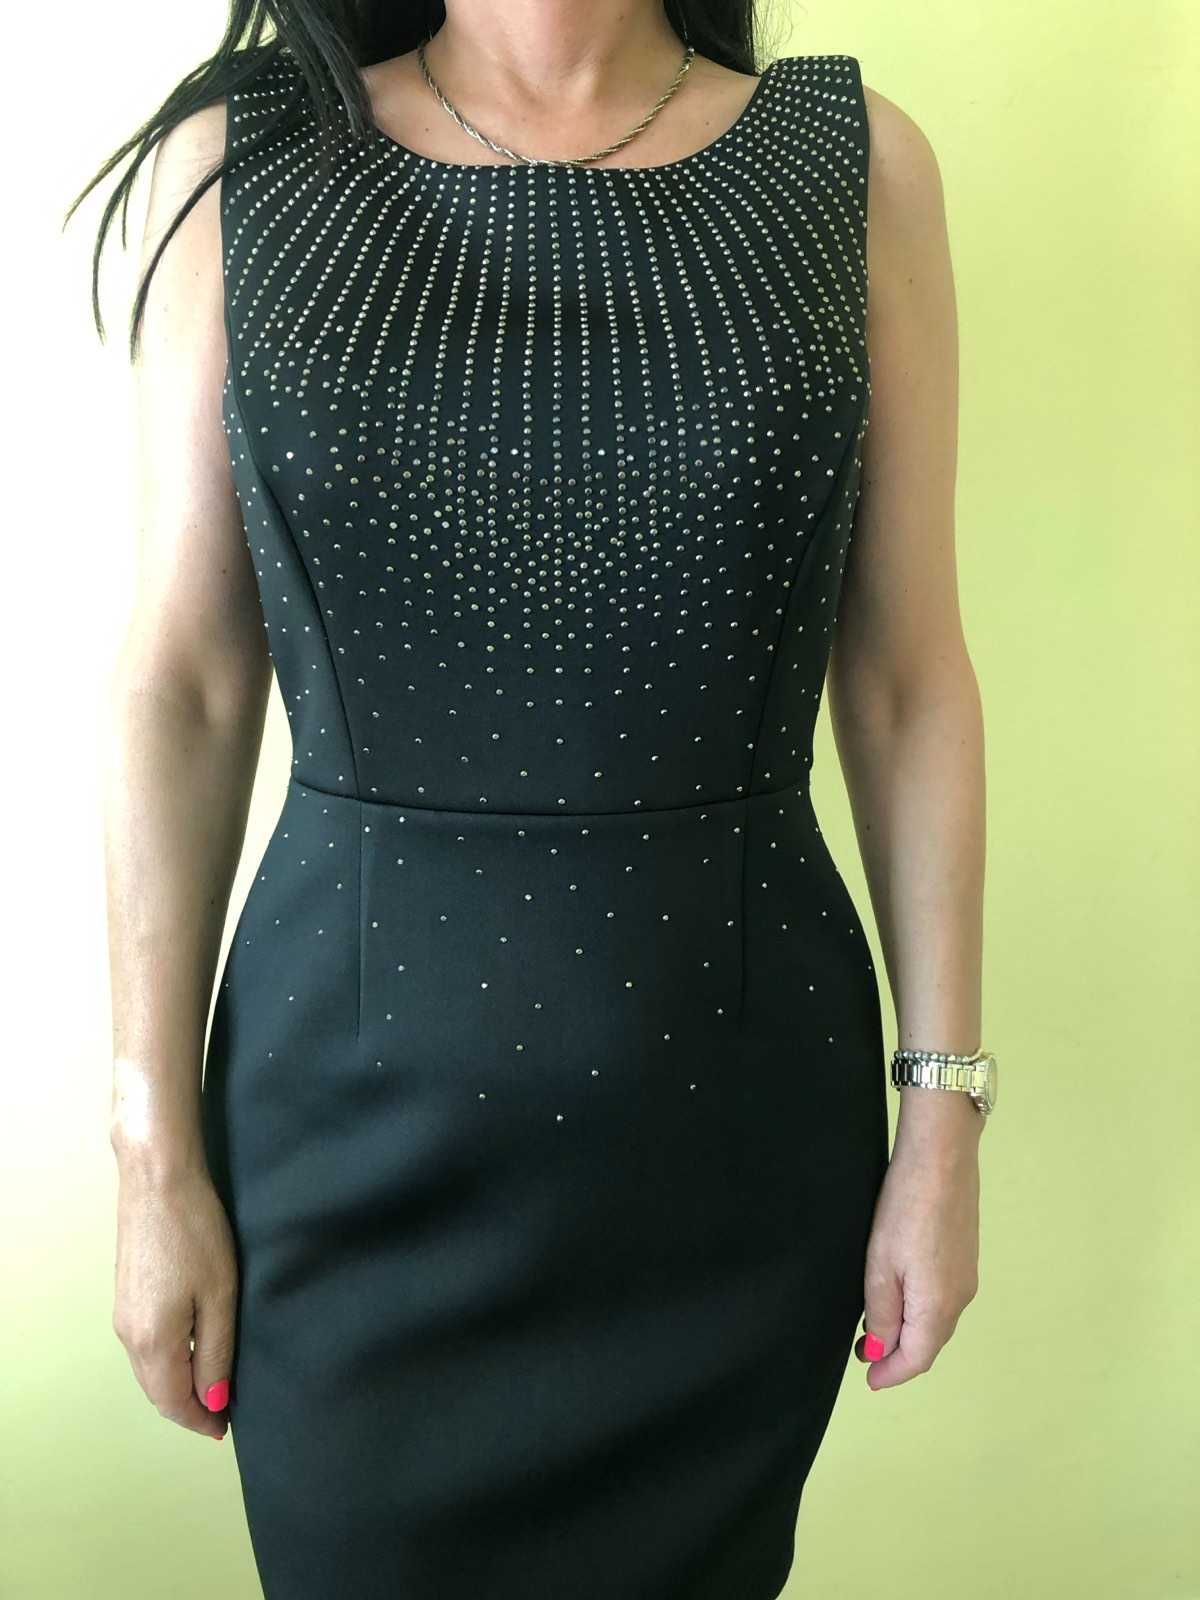 Дамска рокля Calvin Klein, черна, официална, елегантна с камъни